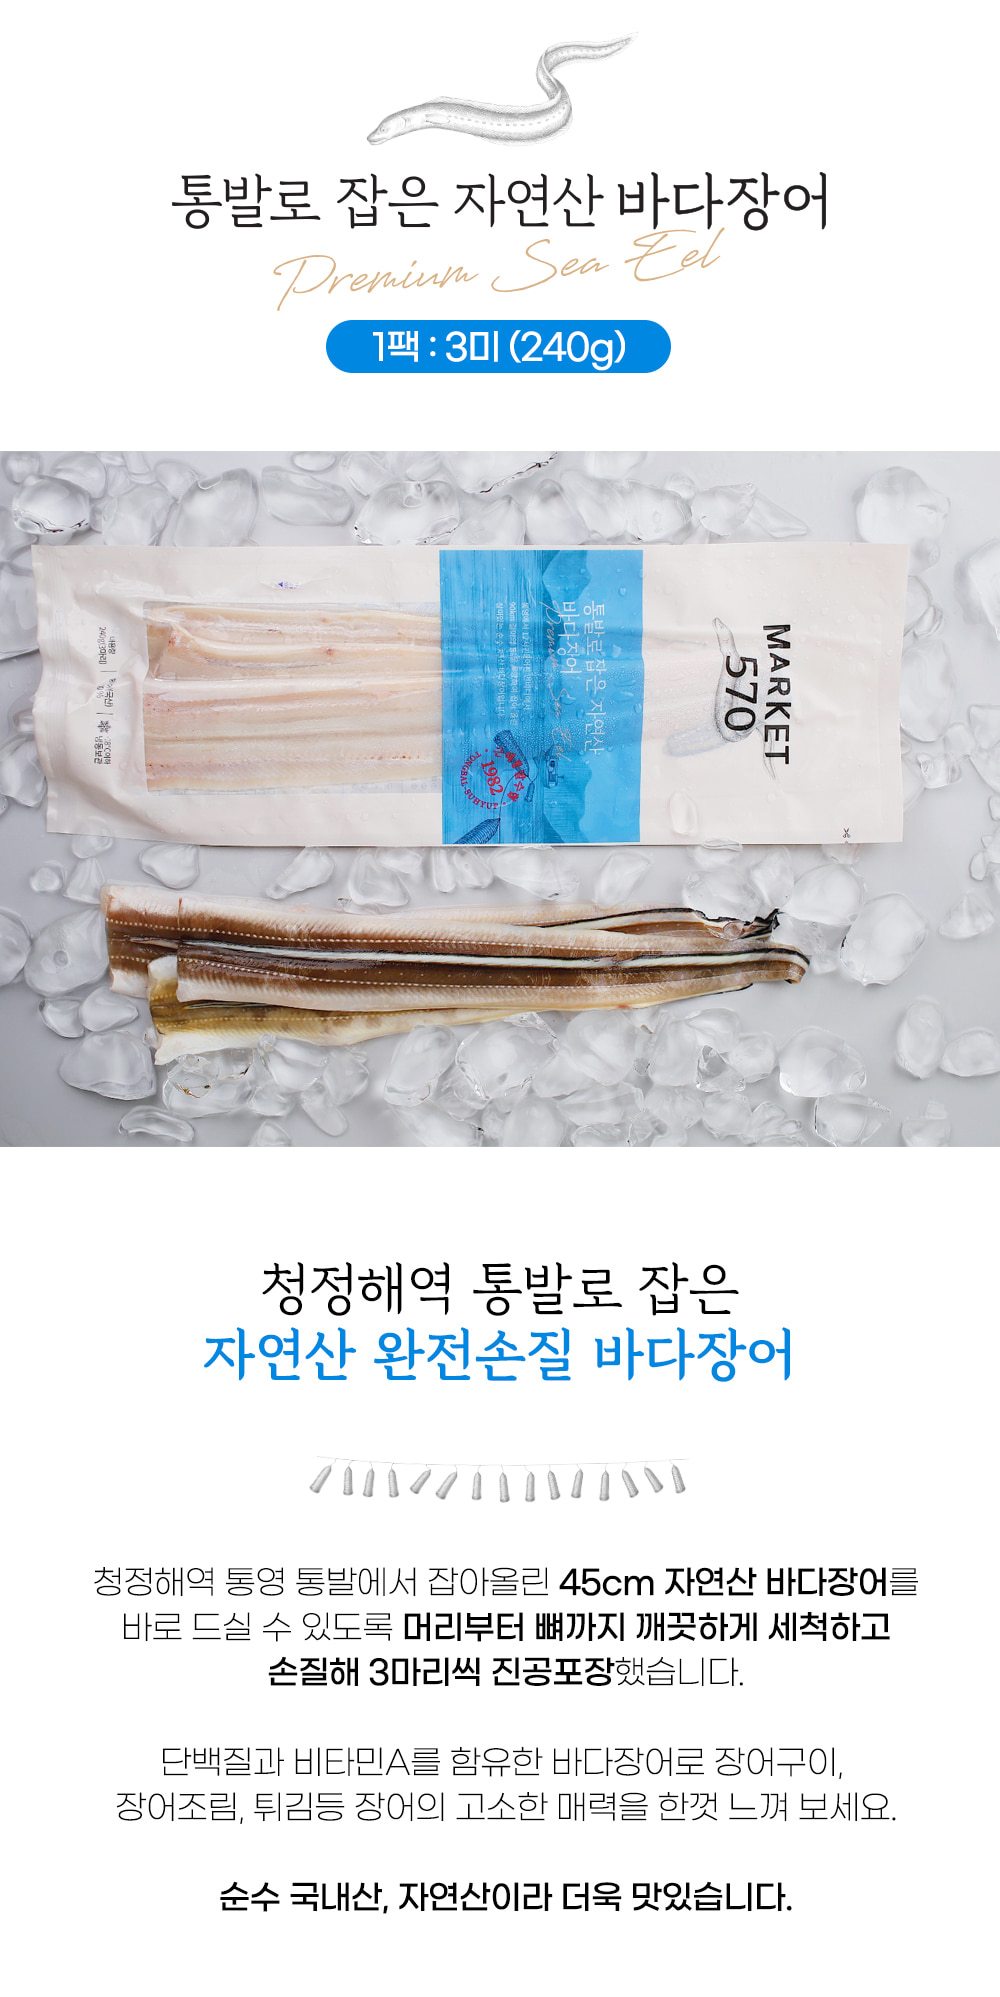 韓國食品-[근해] 프리미엄 자연산 바다장어 240g